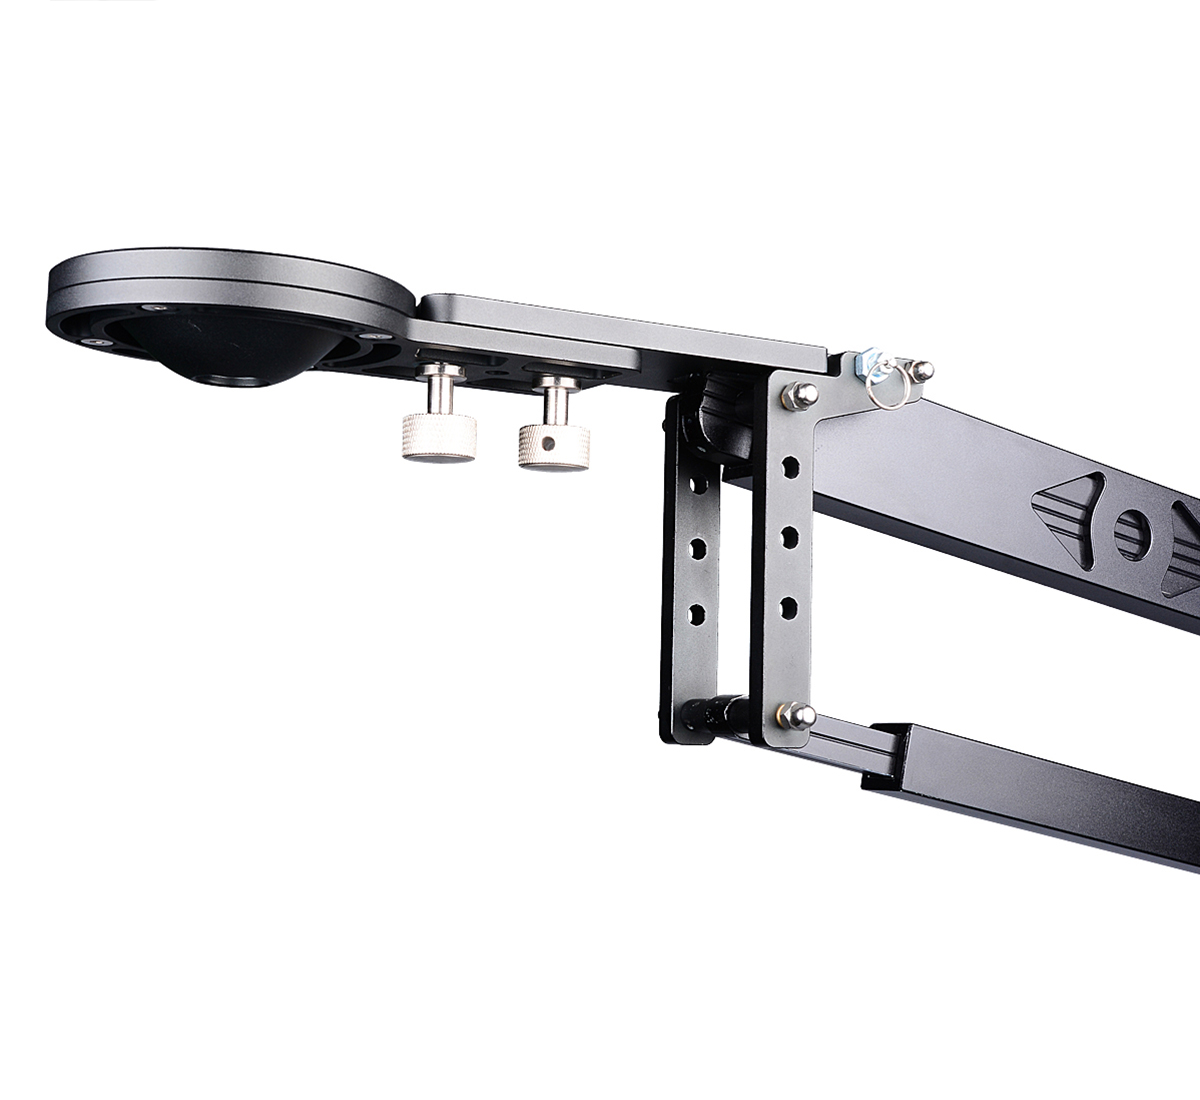 ayex Kamerakran für DSLR Kameras und Camcorder